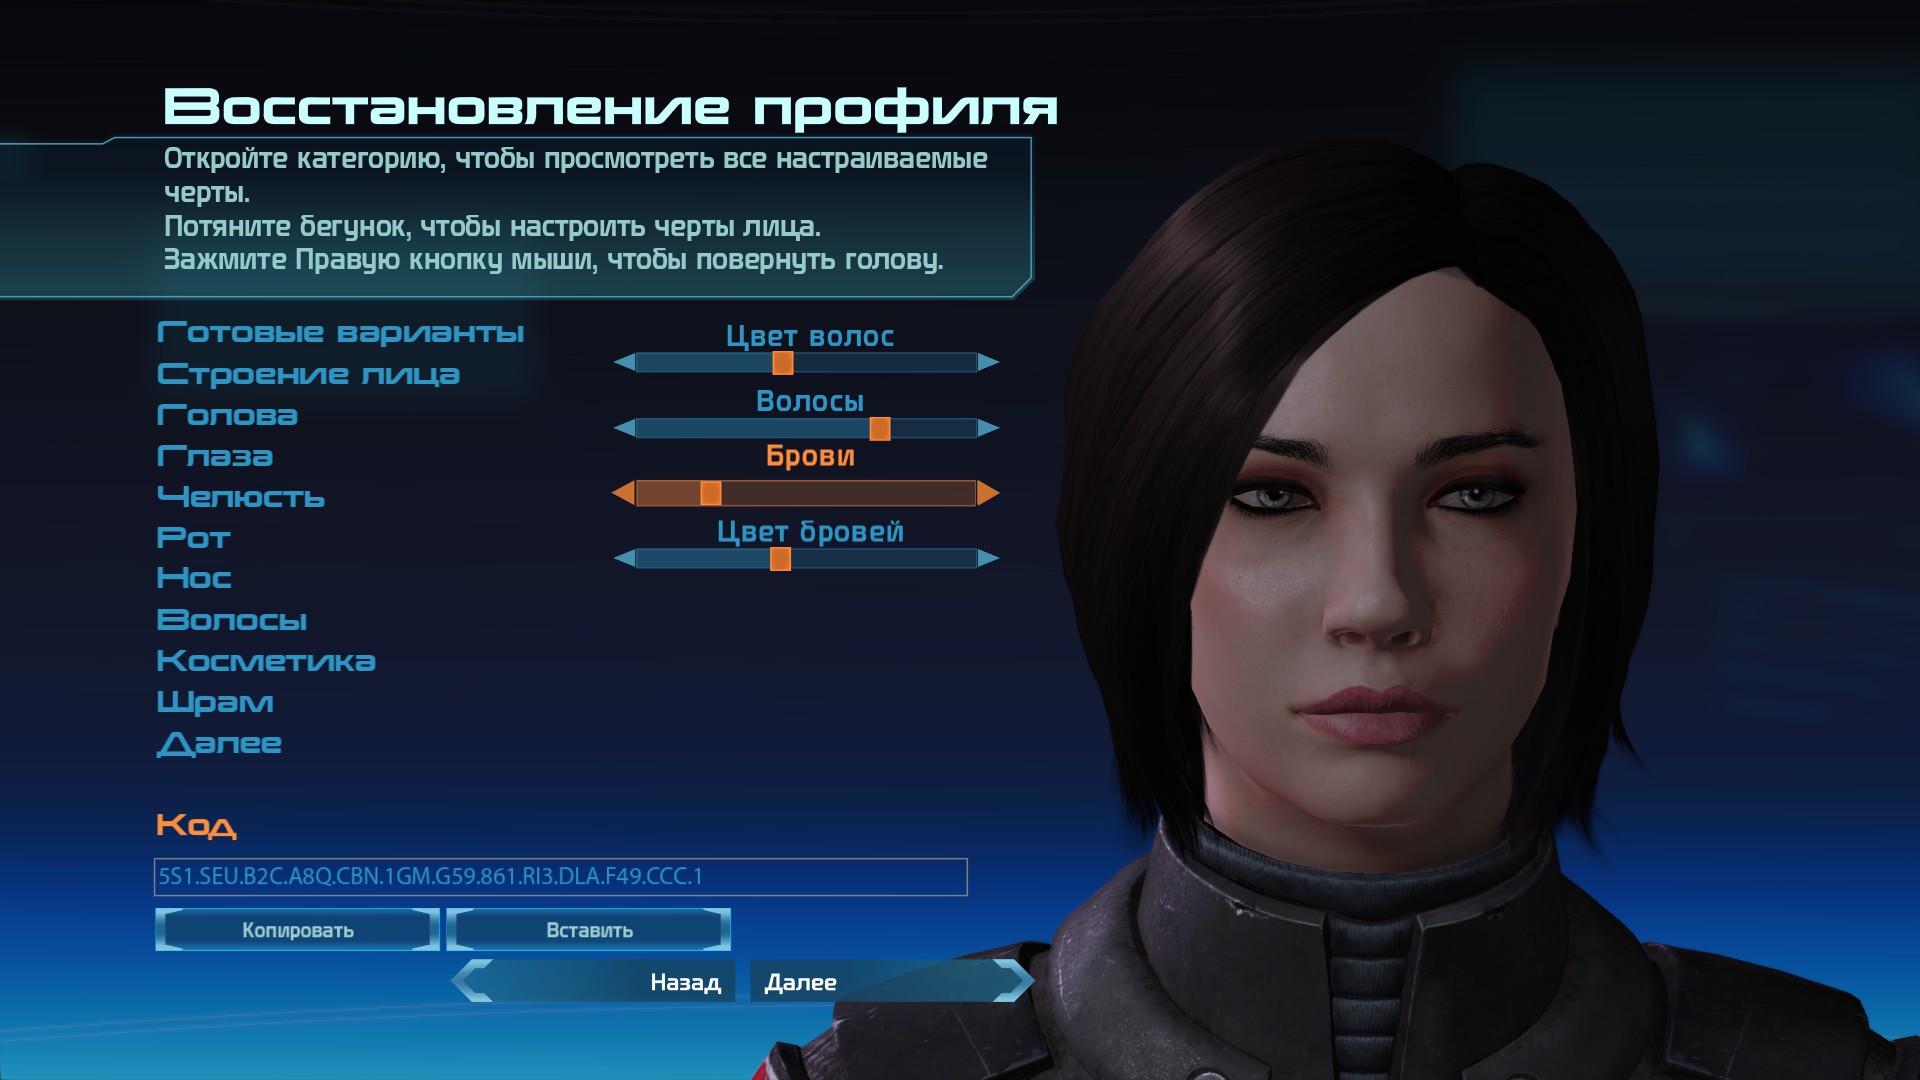 Mass Effect ™ Legendary Edition - Face Codes 8 - Steamlists.com